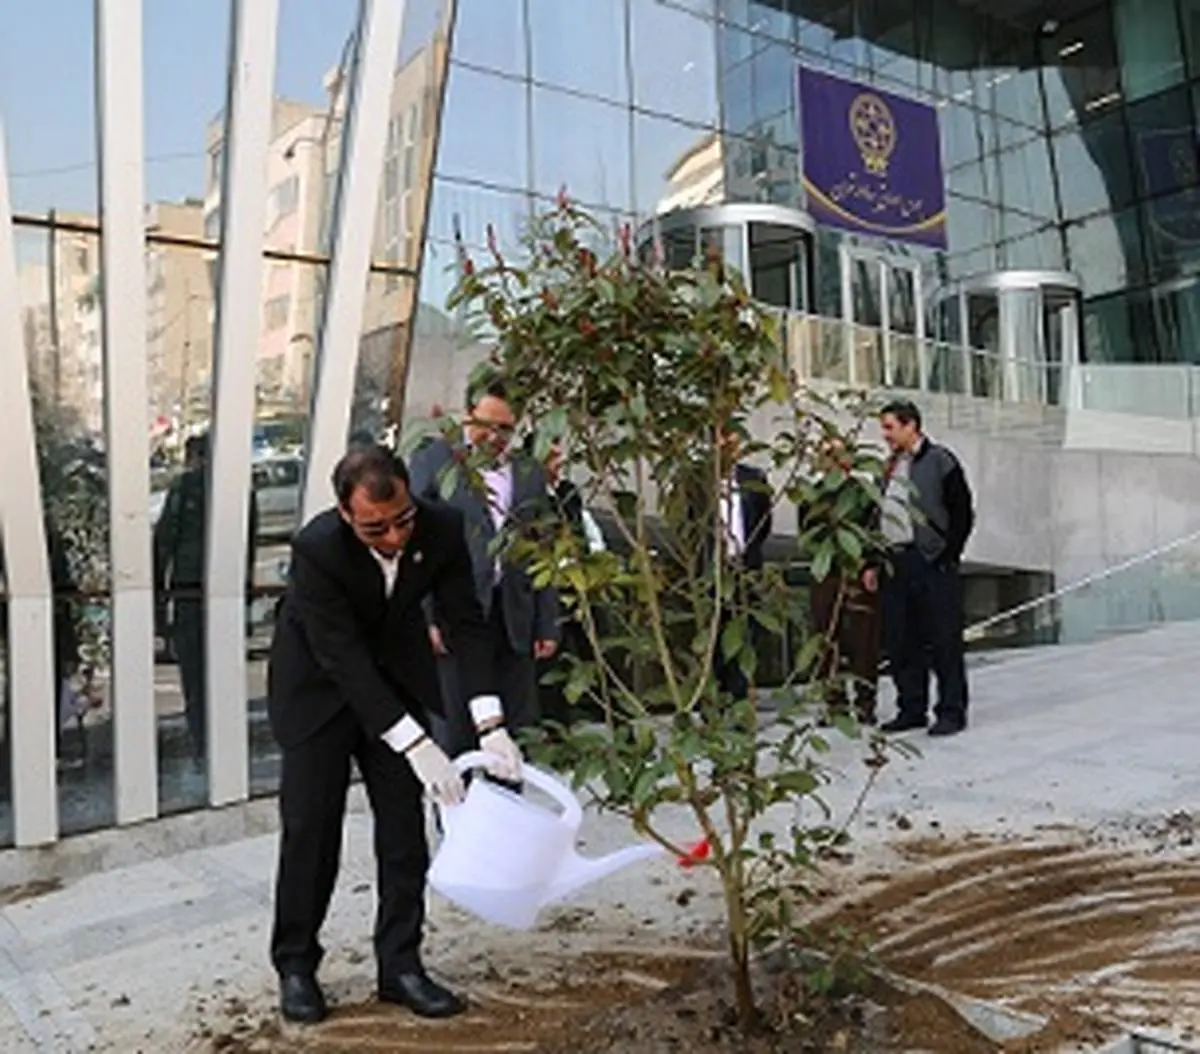  کاشت نهال توسط مدیرعامل بورس تهران در آستانه روز درختکاری 